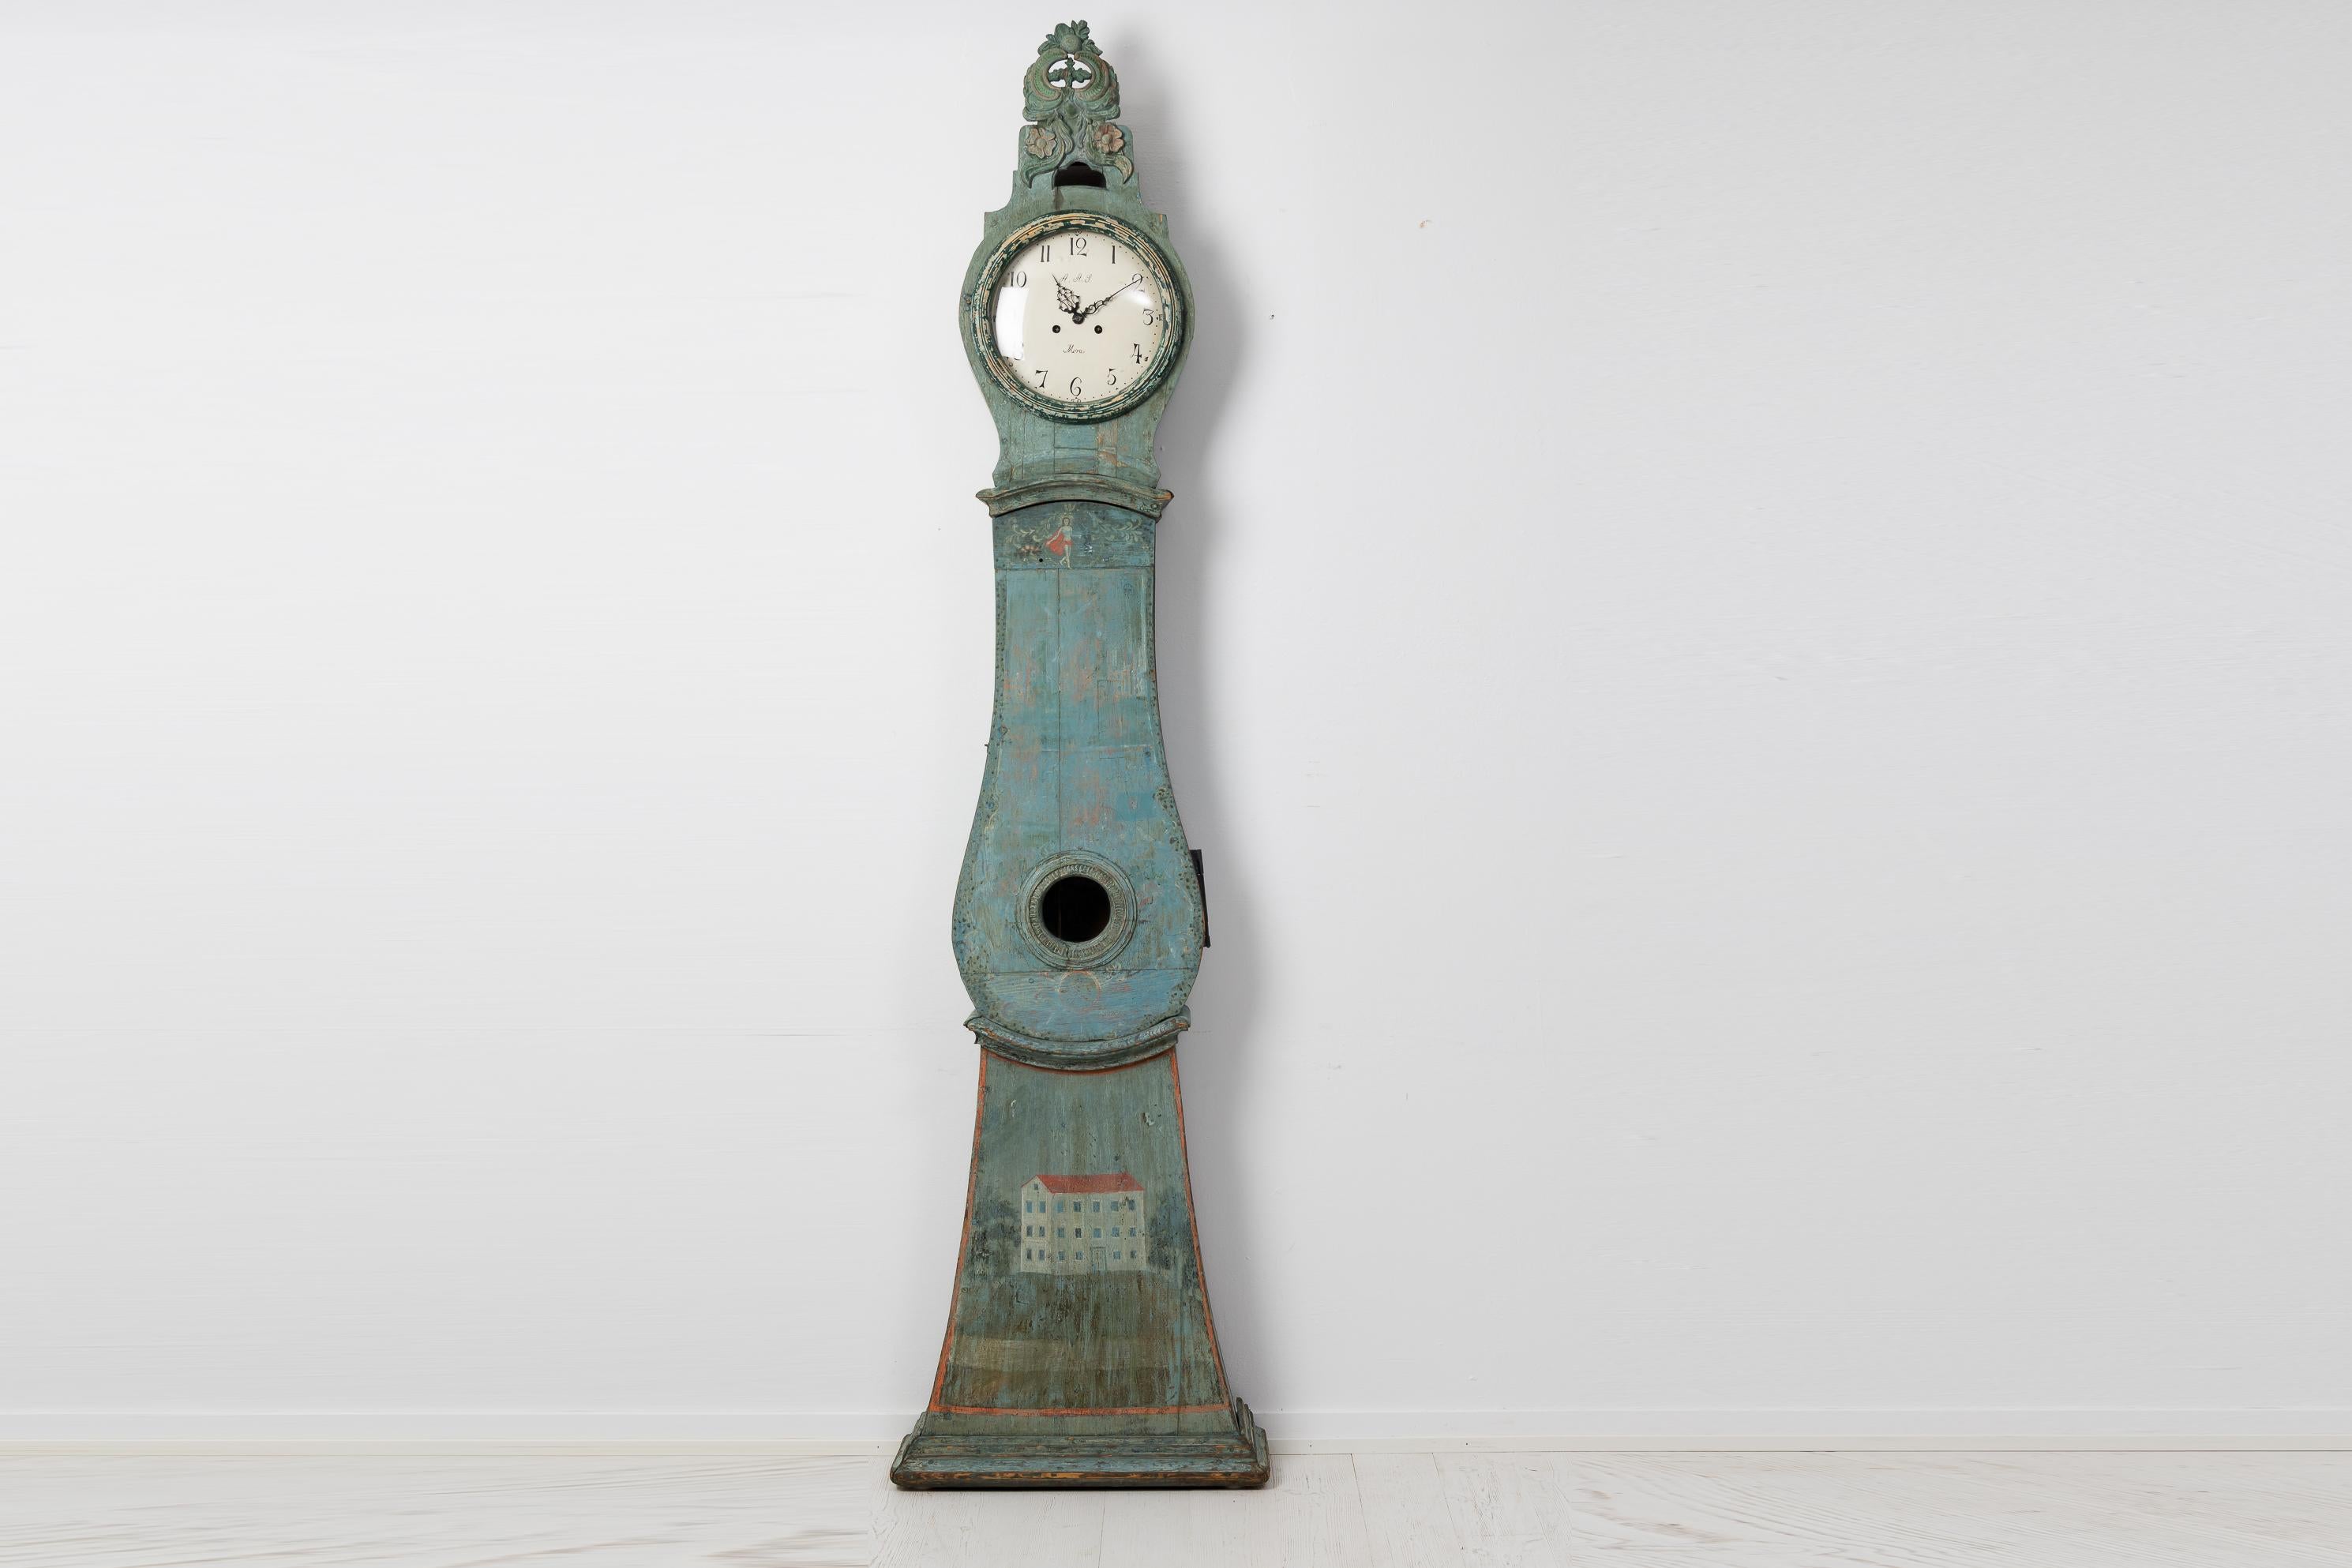 Langgehäuseuhr aus Nordschweden, hergestellt in den späten 1700er Jahren. Die Uhr hat die ursprüngliche blau-grüne Farbe mit ungewöhnlichem Dekor. Im Laufe der Zeit hat sich außerdem eine einzigartige Patina gebildet, die den Charakter der Uhr